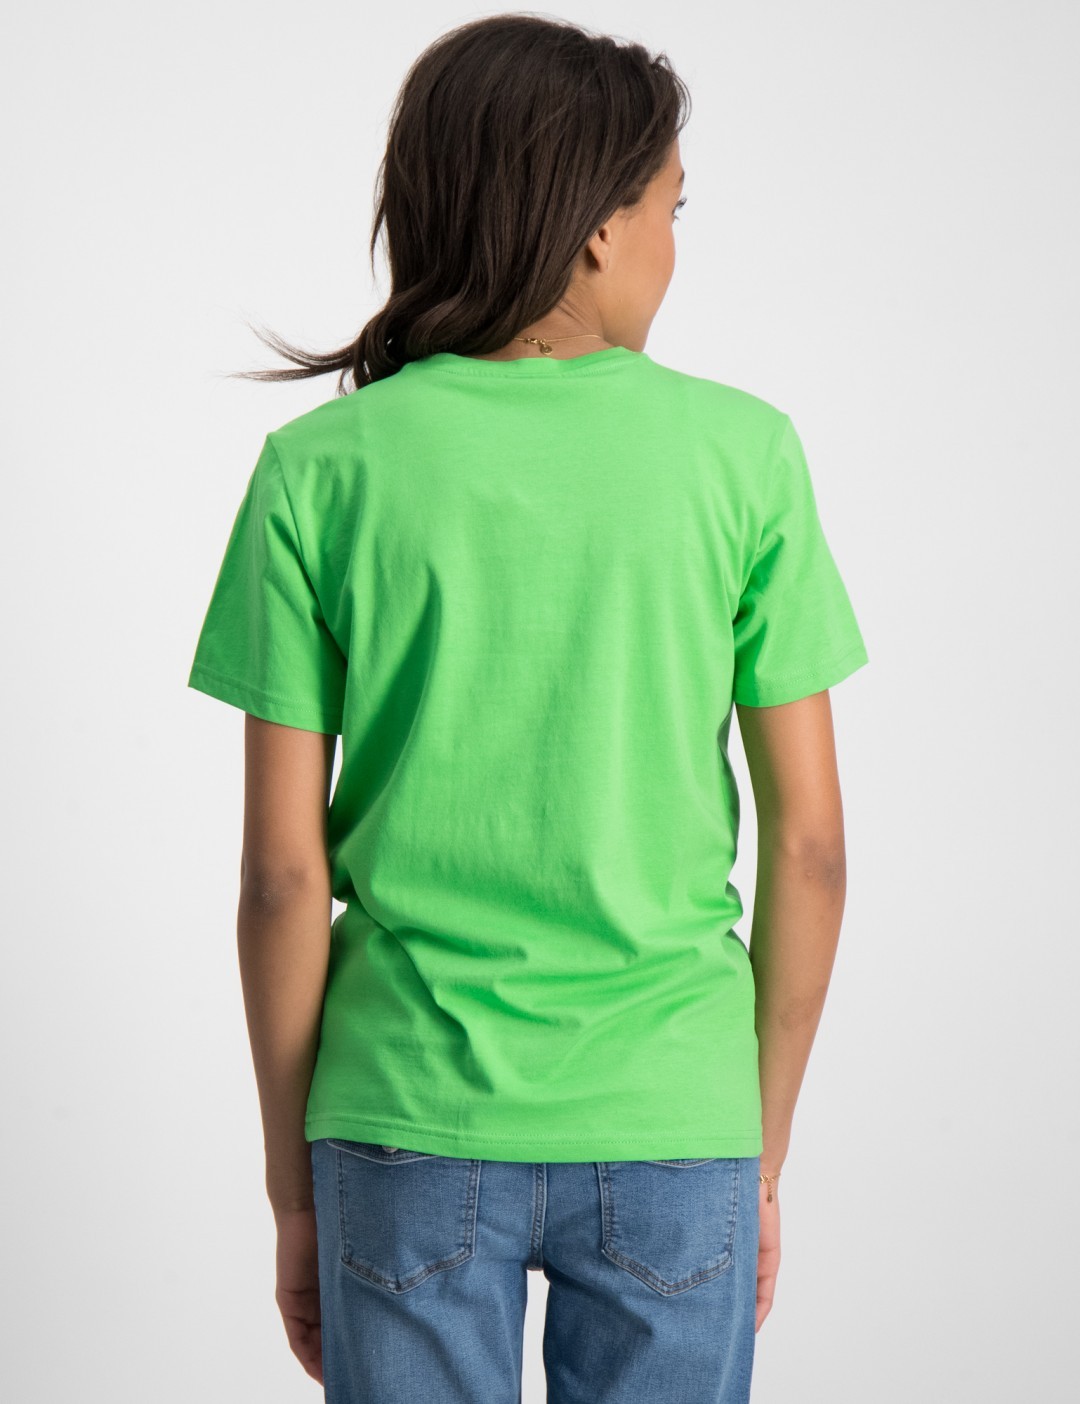 Grün Crewneck T-Shirt für Kids Store Brand Mädchen 